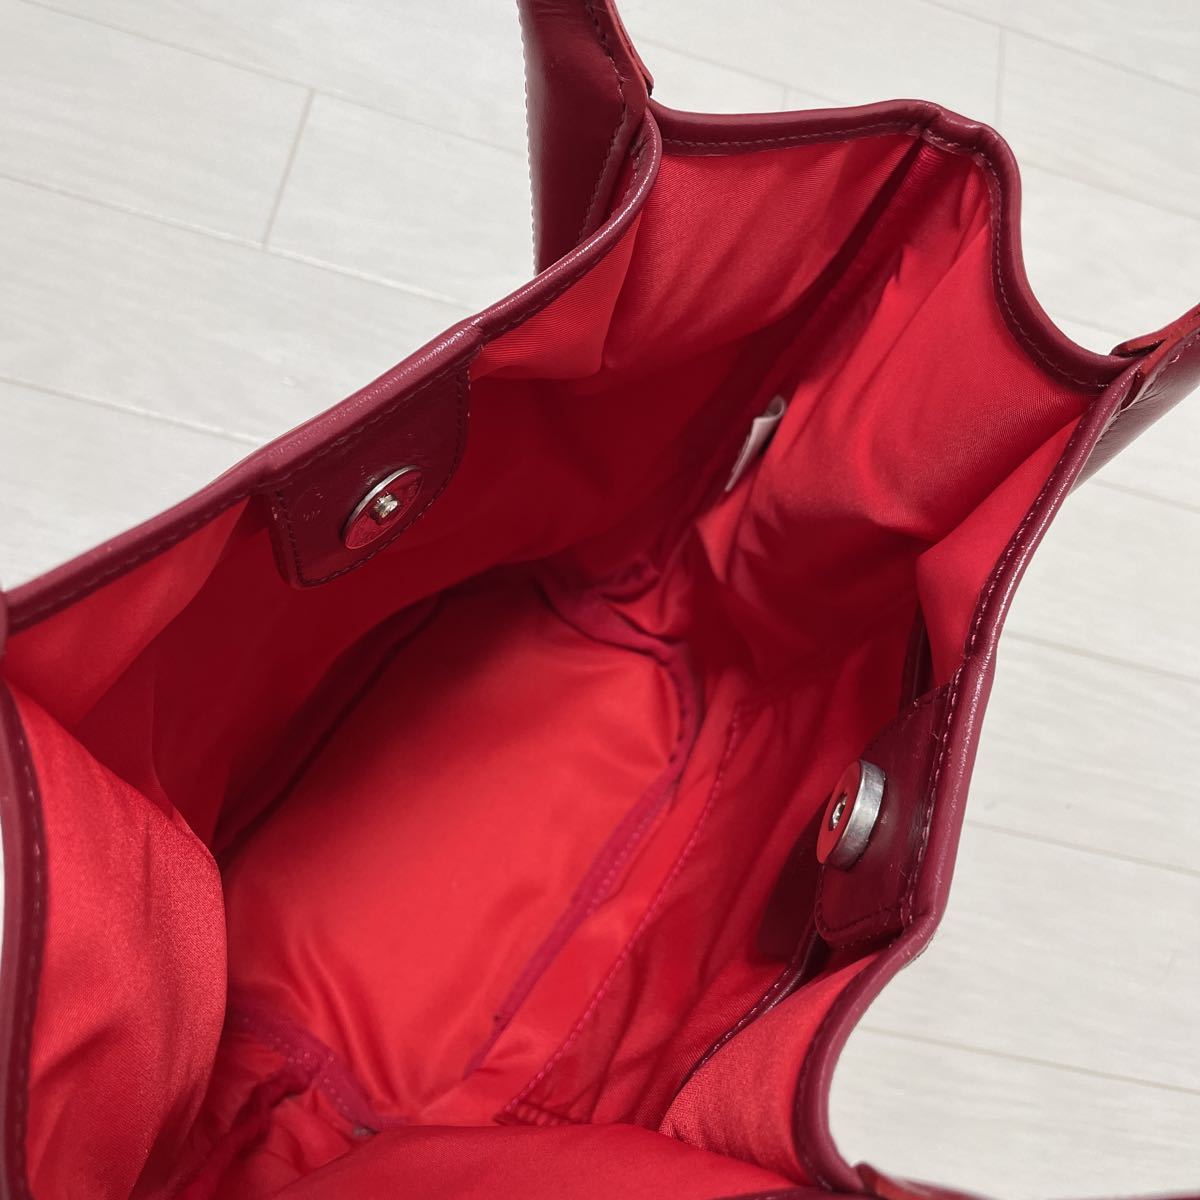  Sazaby SAZABY ручная сумочка большая сумка - нейлон × кожа красный красный цвет сделано в Японии 